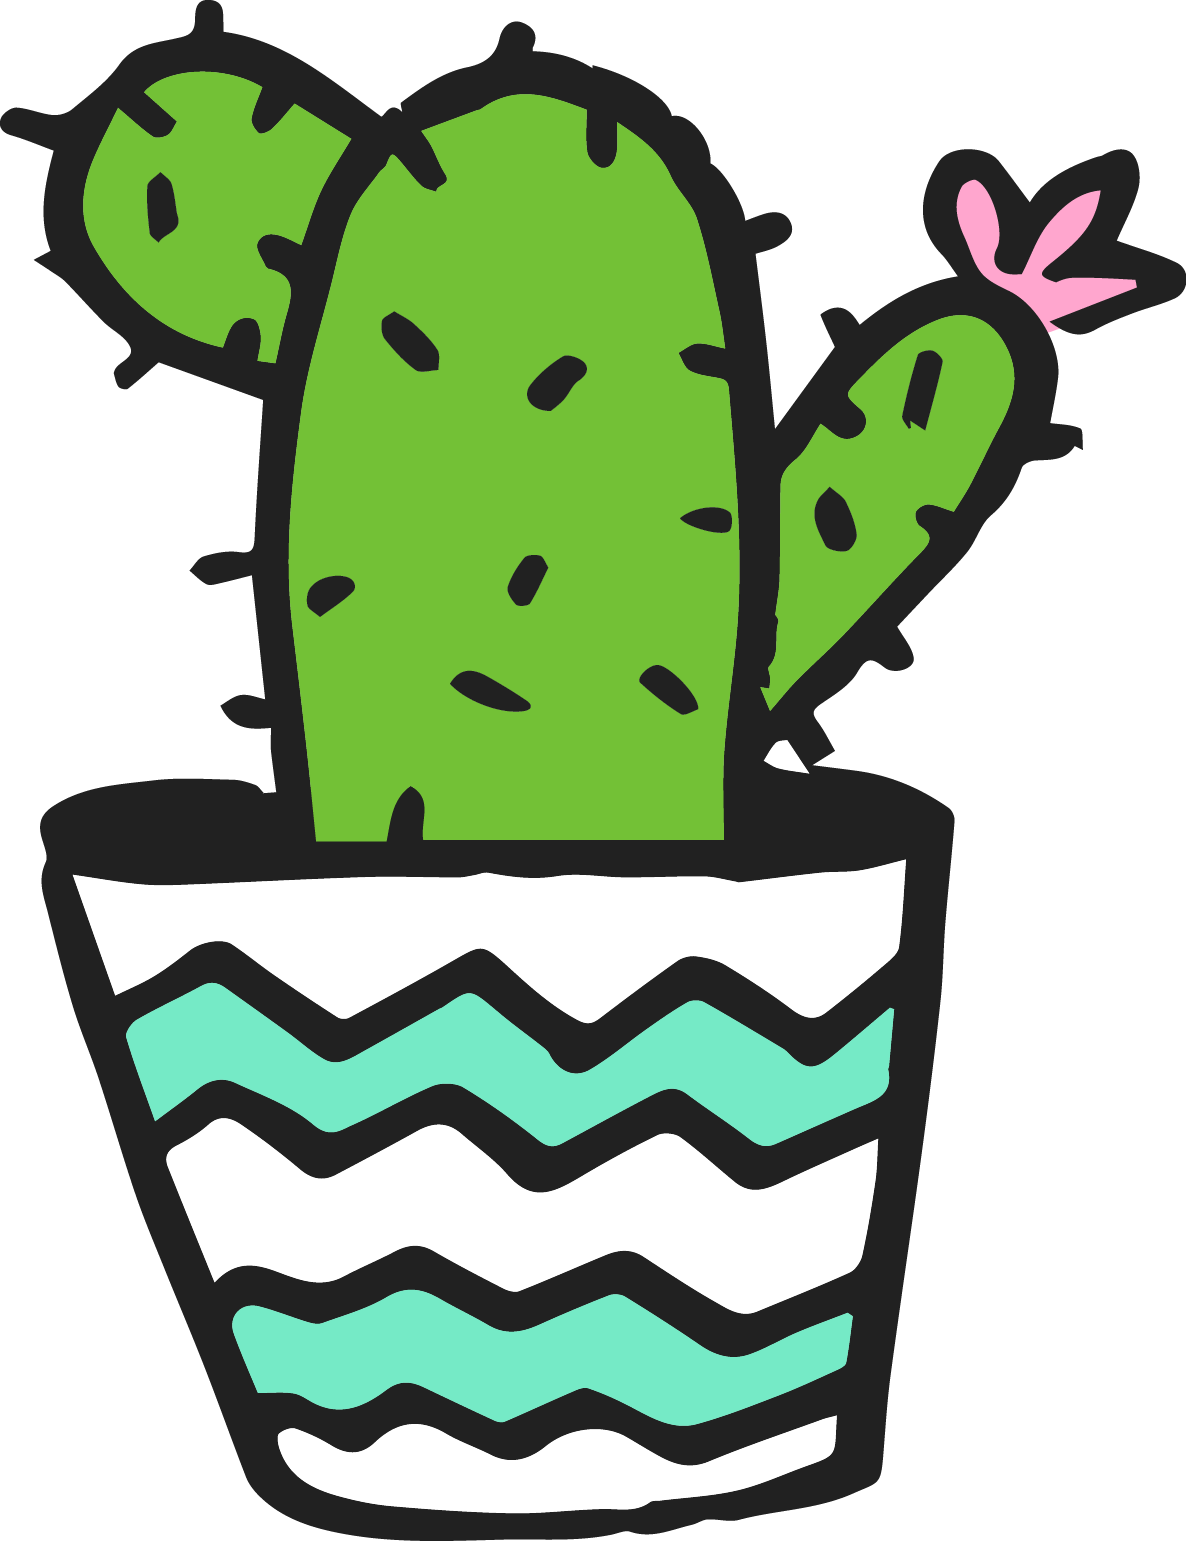 2-15 - Cactus (1186x1541)